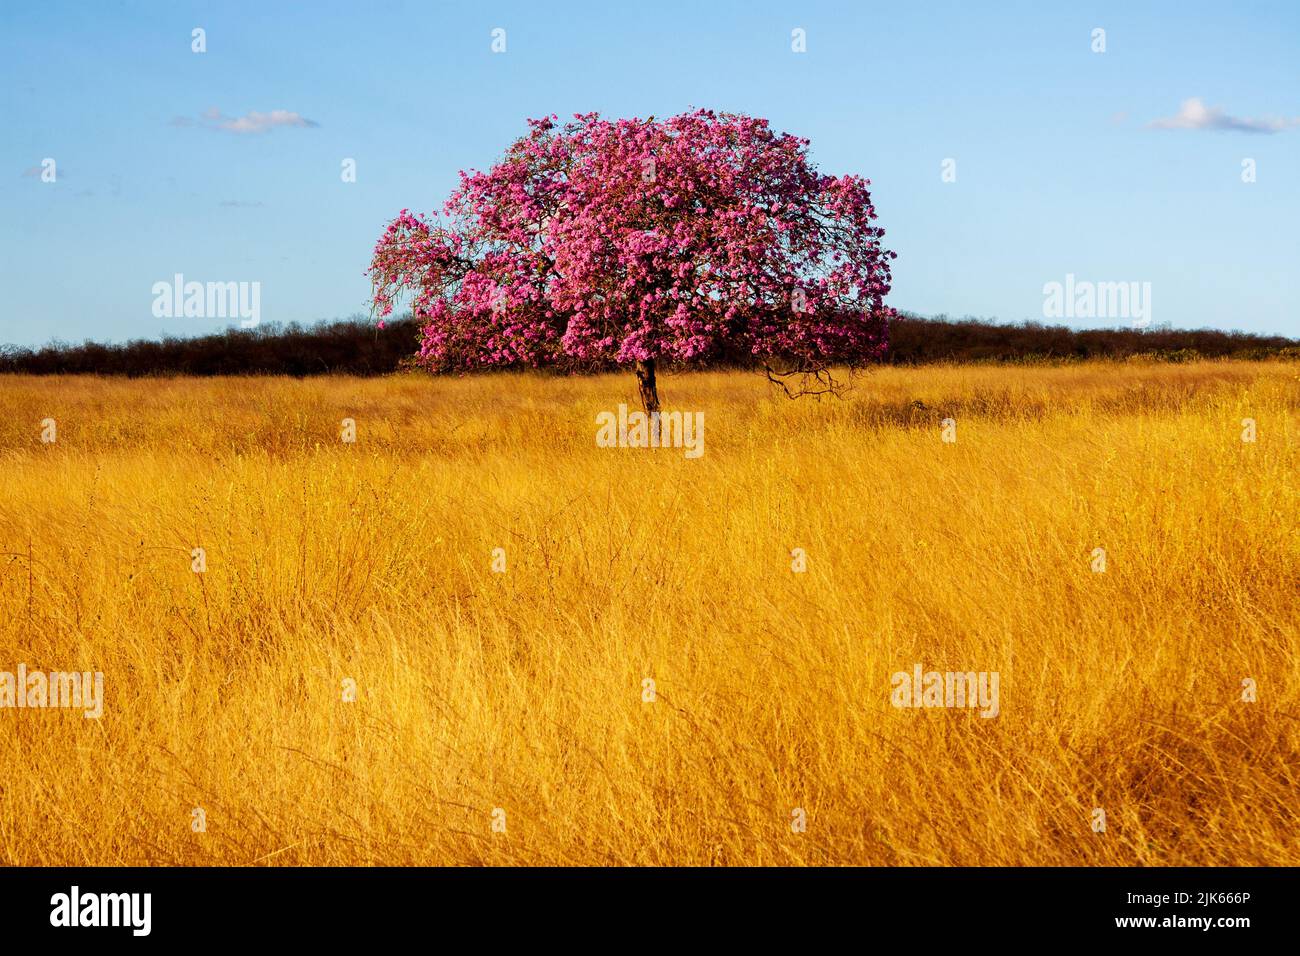 l'ipe pourpre ou l'arbre pau-d'arco dans un champ avec de l'herbe sèche Banque D'Images